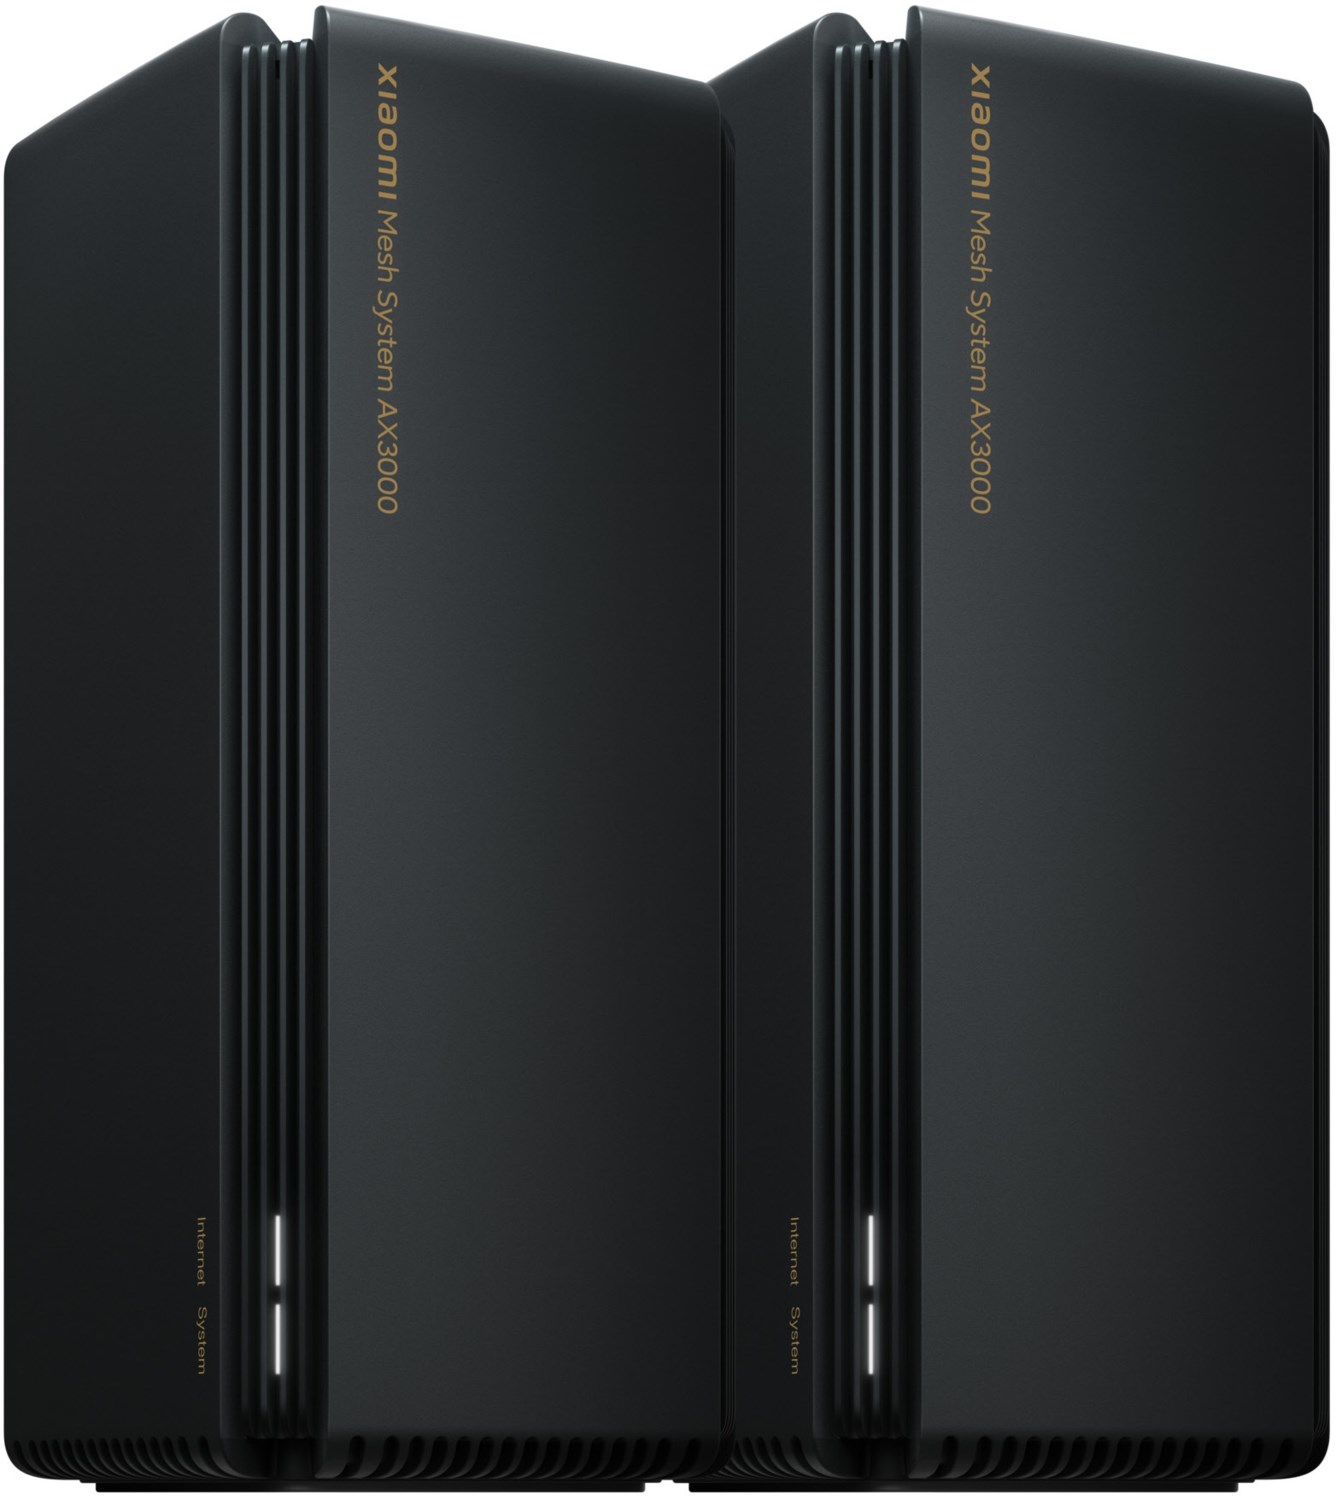 AX3000 (2er Pack) WLAN-Router schwarz